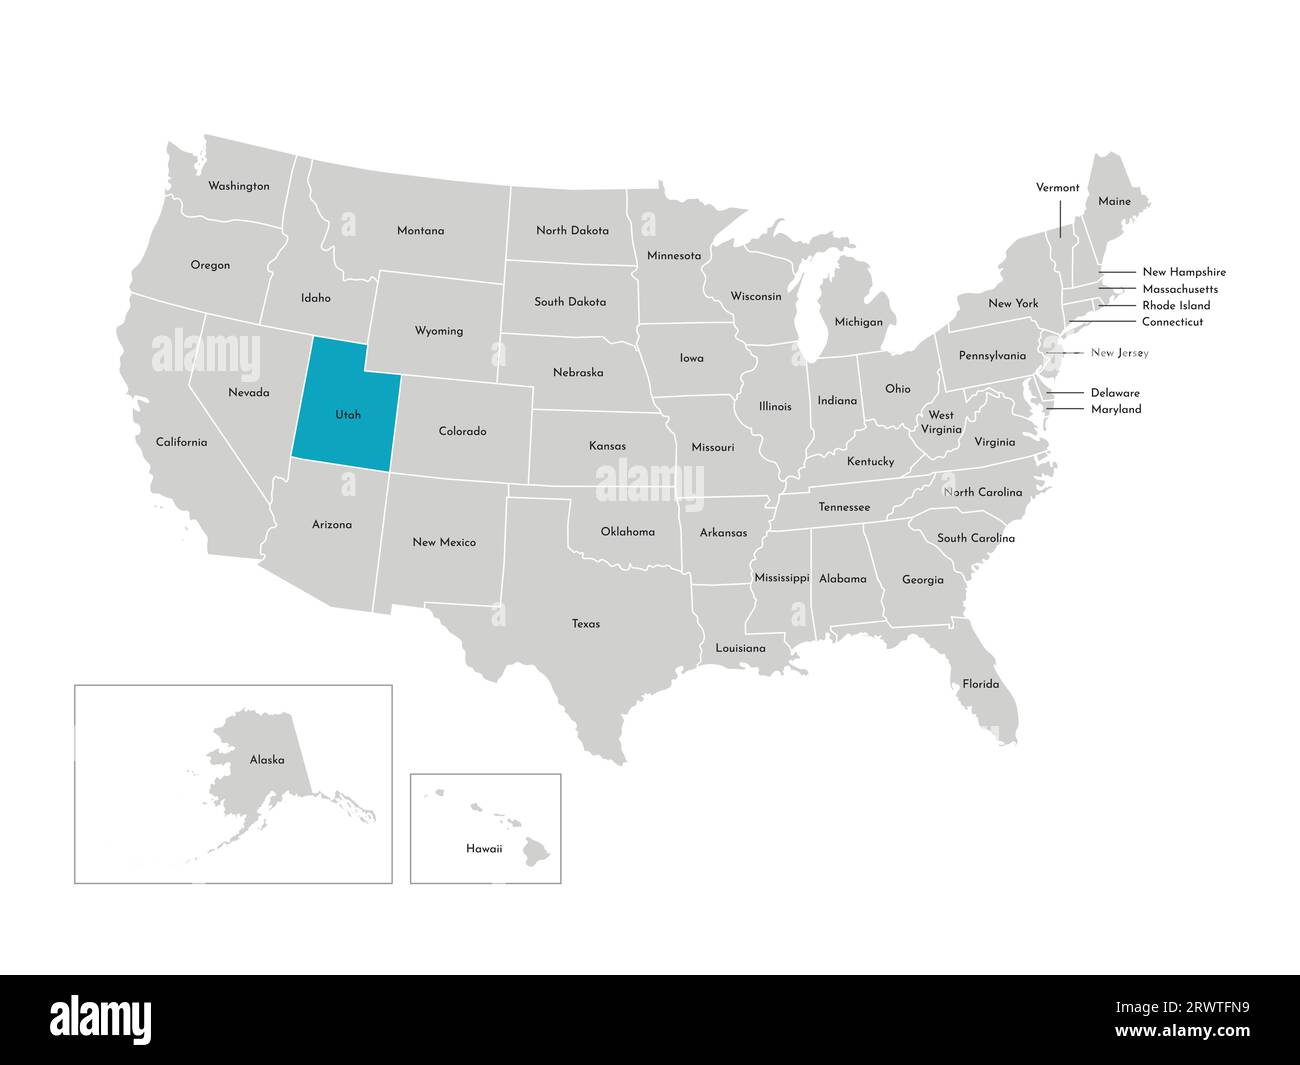 Illustrazione vettoriale isolata della mappa amministrativa semplificata degli Stati Uniti. Confini degli stati con nomi. Silhouette blu dello Utah (stato). Illustrazione Vettoriale